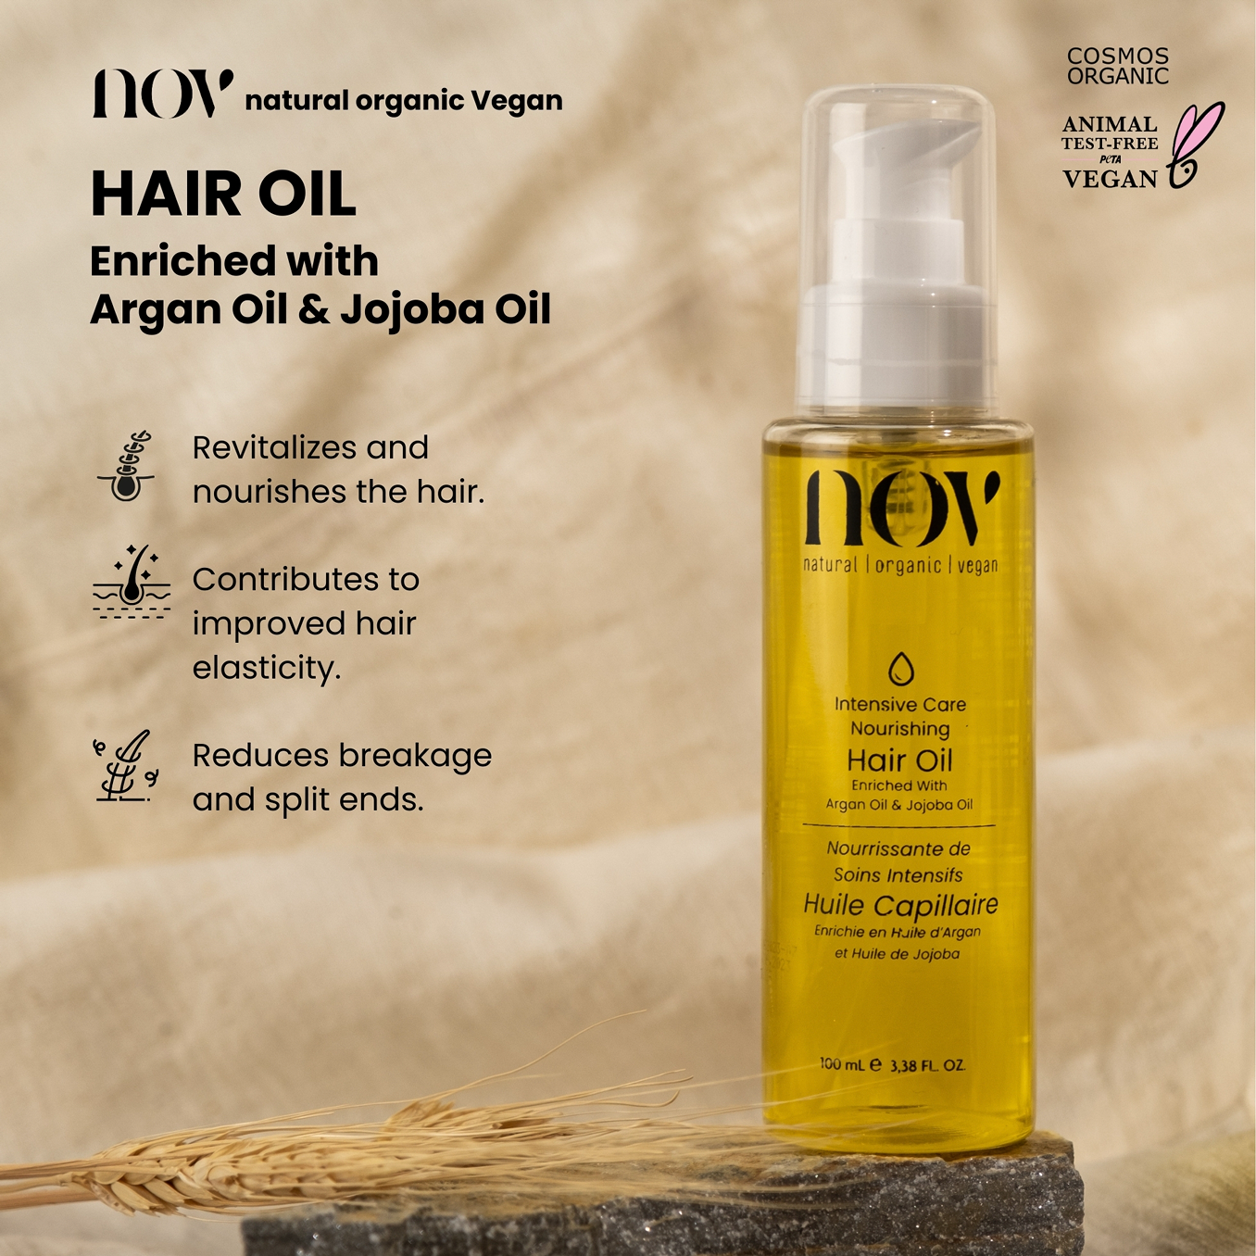 Natural Organic Vegan Hair Oil